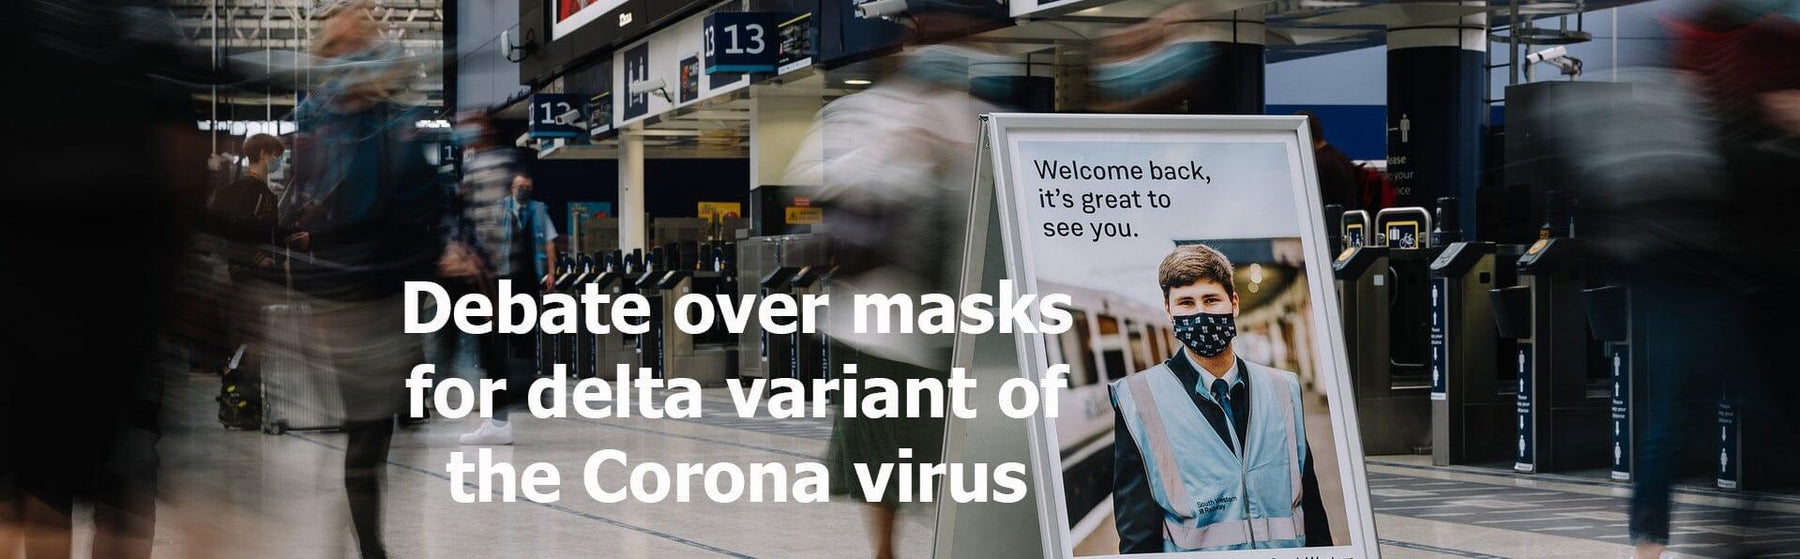 Debate over masks for delta variant of the Corona virus